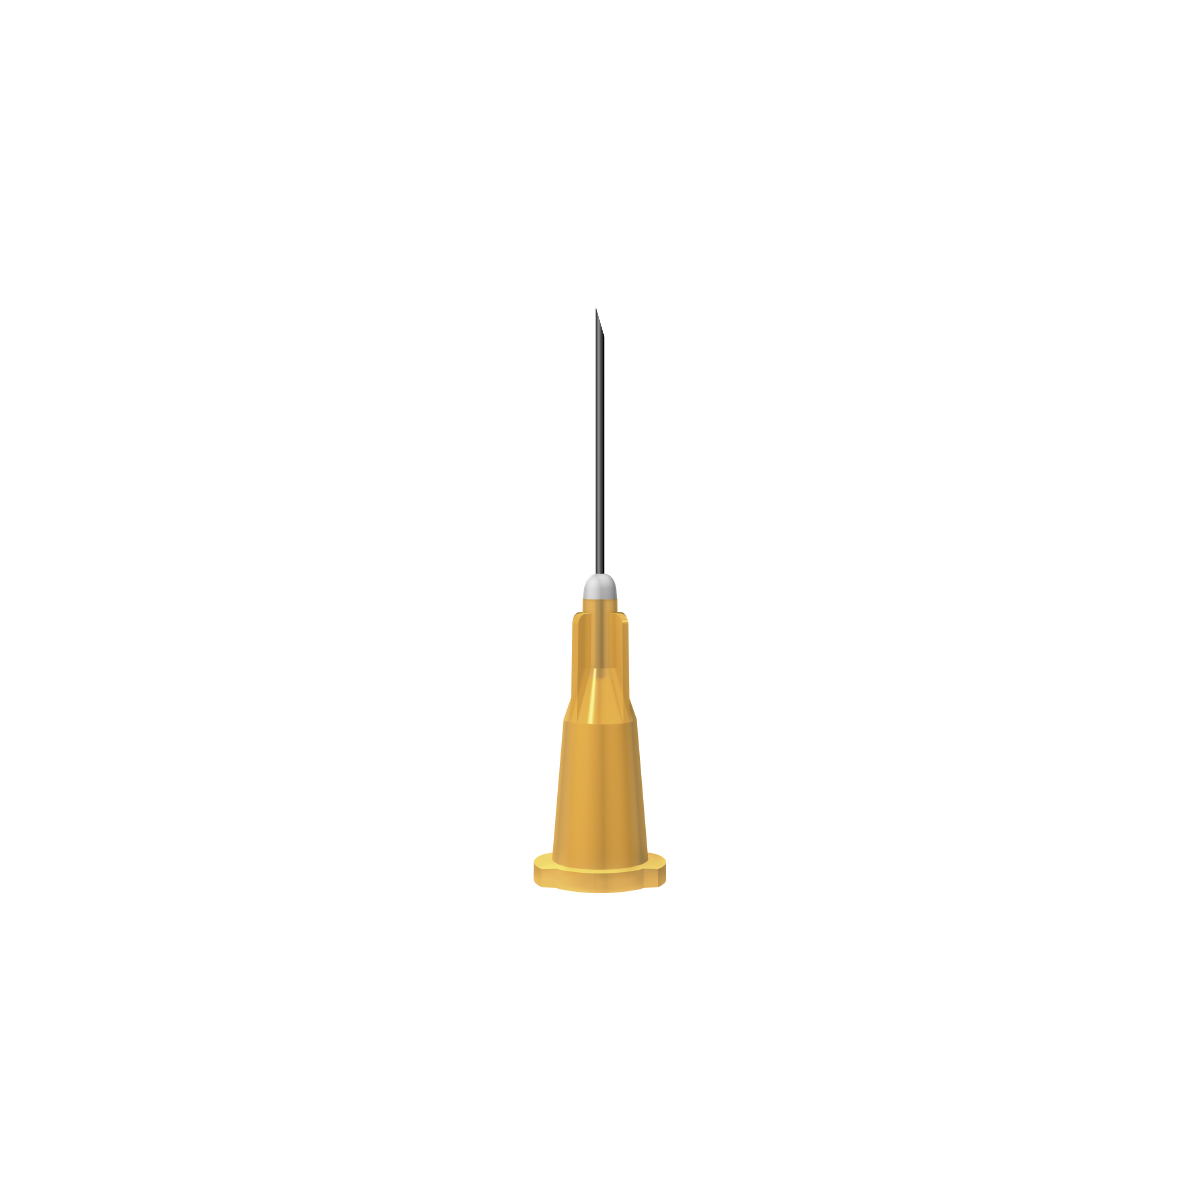 BBraun: Orange 25G 16mm (⅝ inch) needle